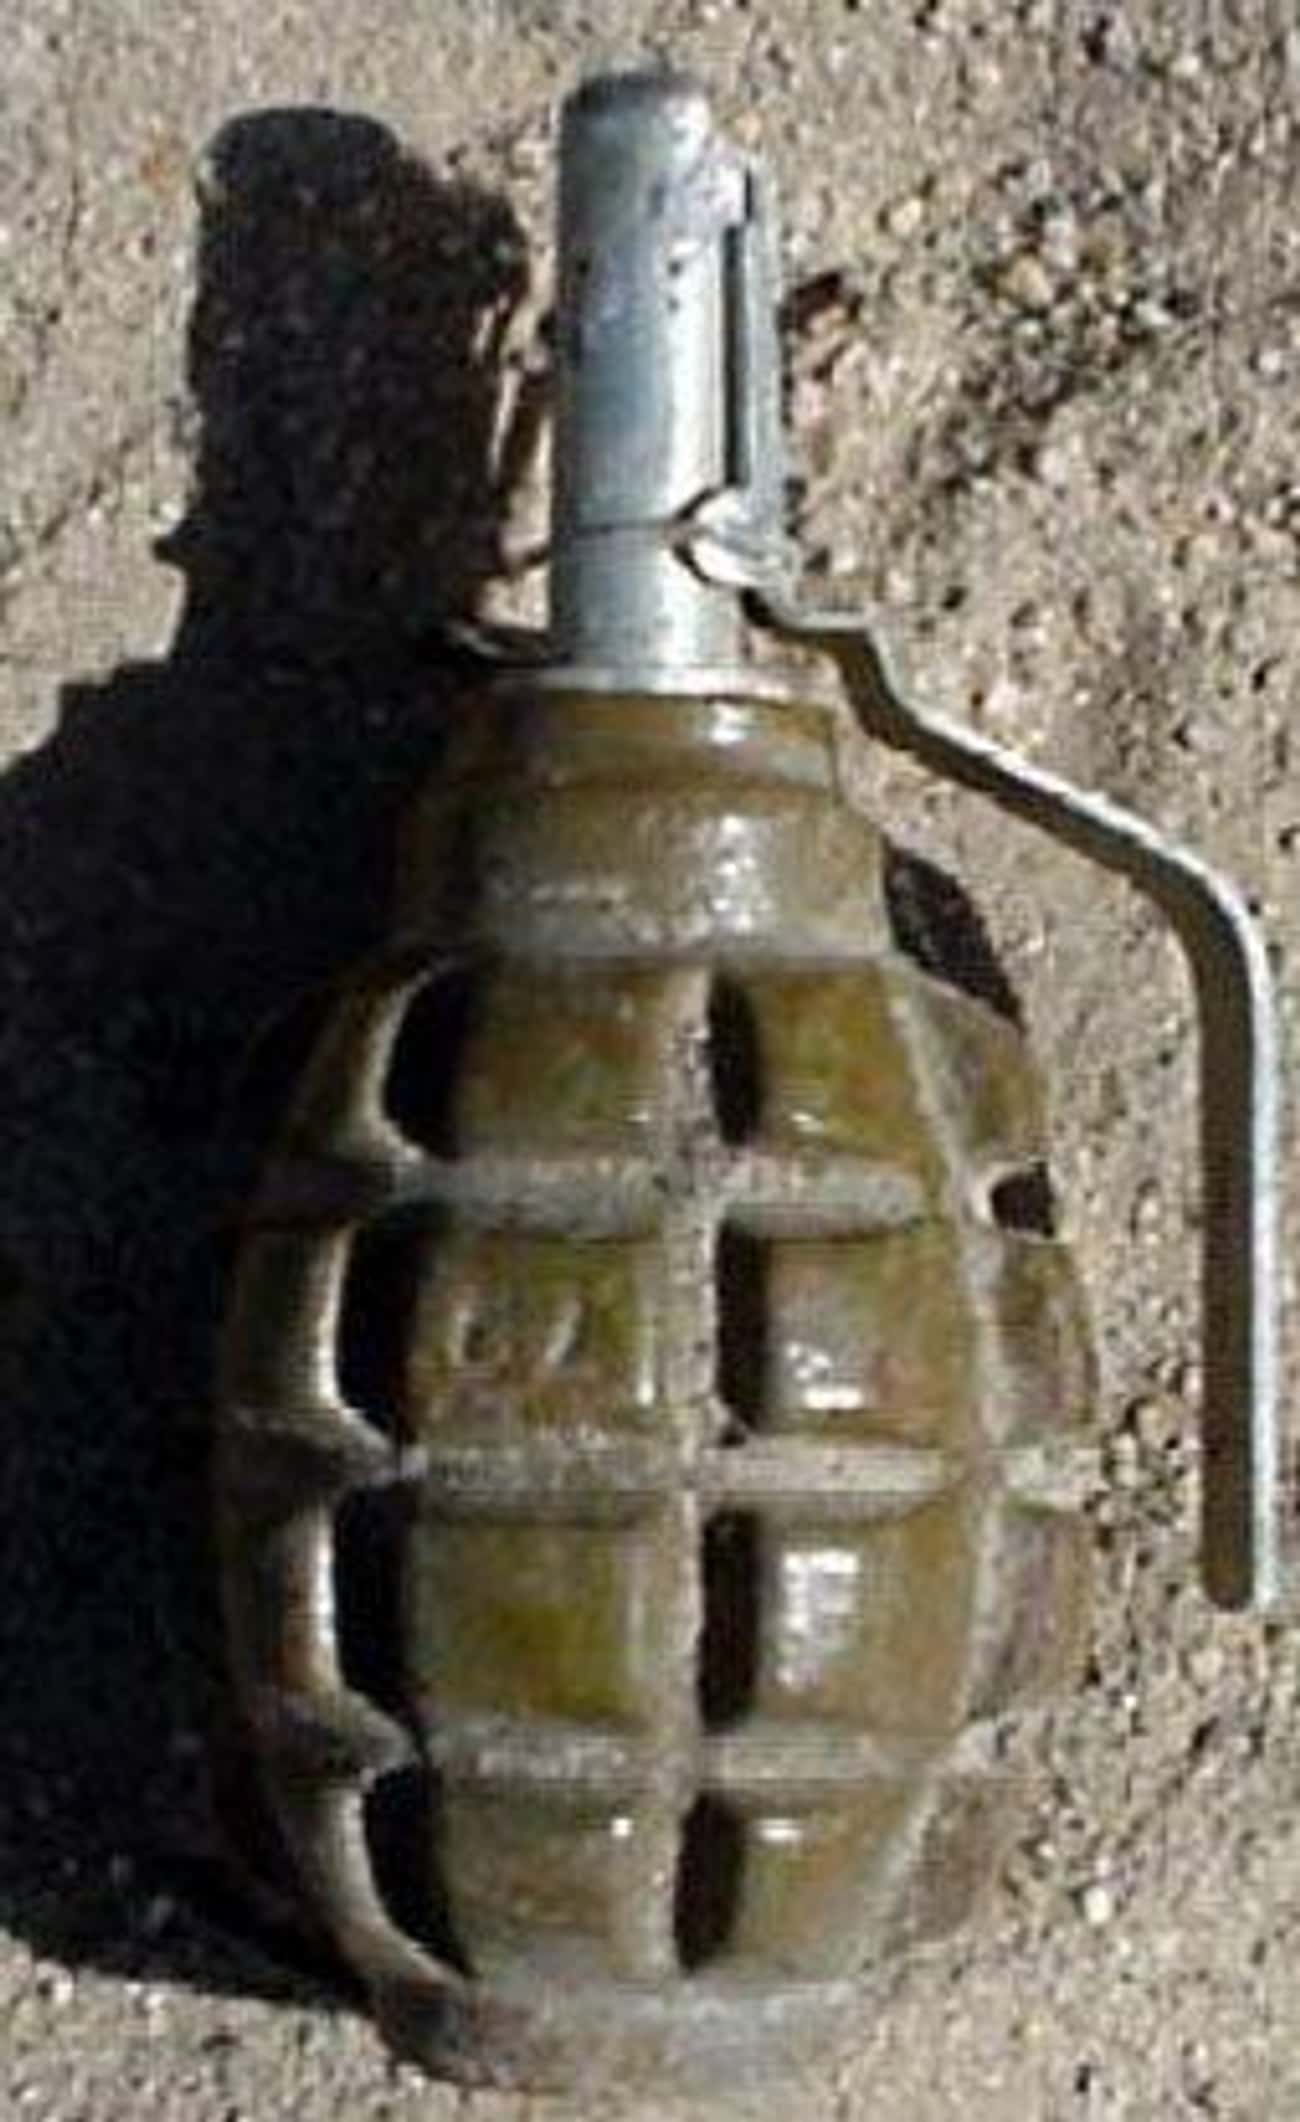 Grenade in a Vagina